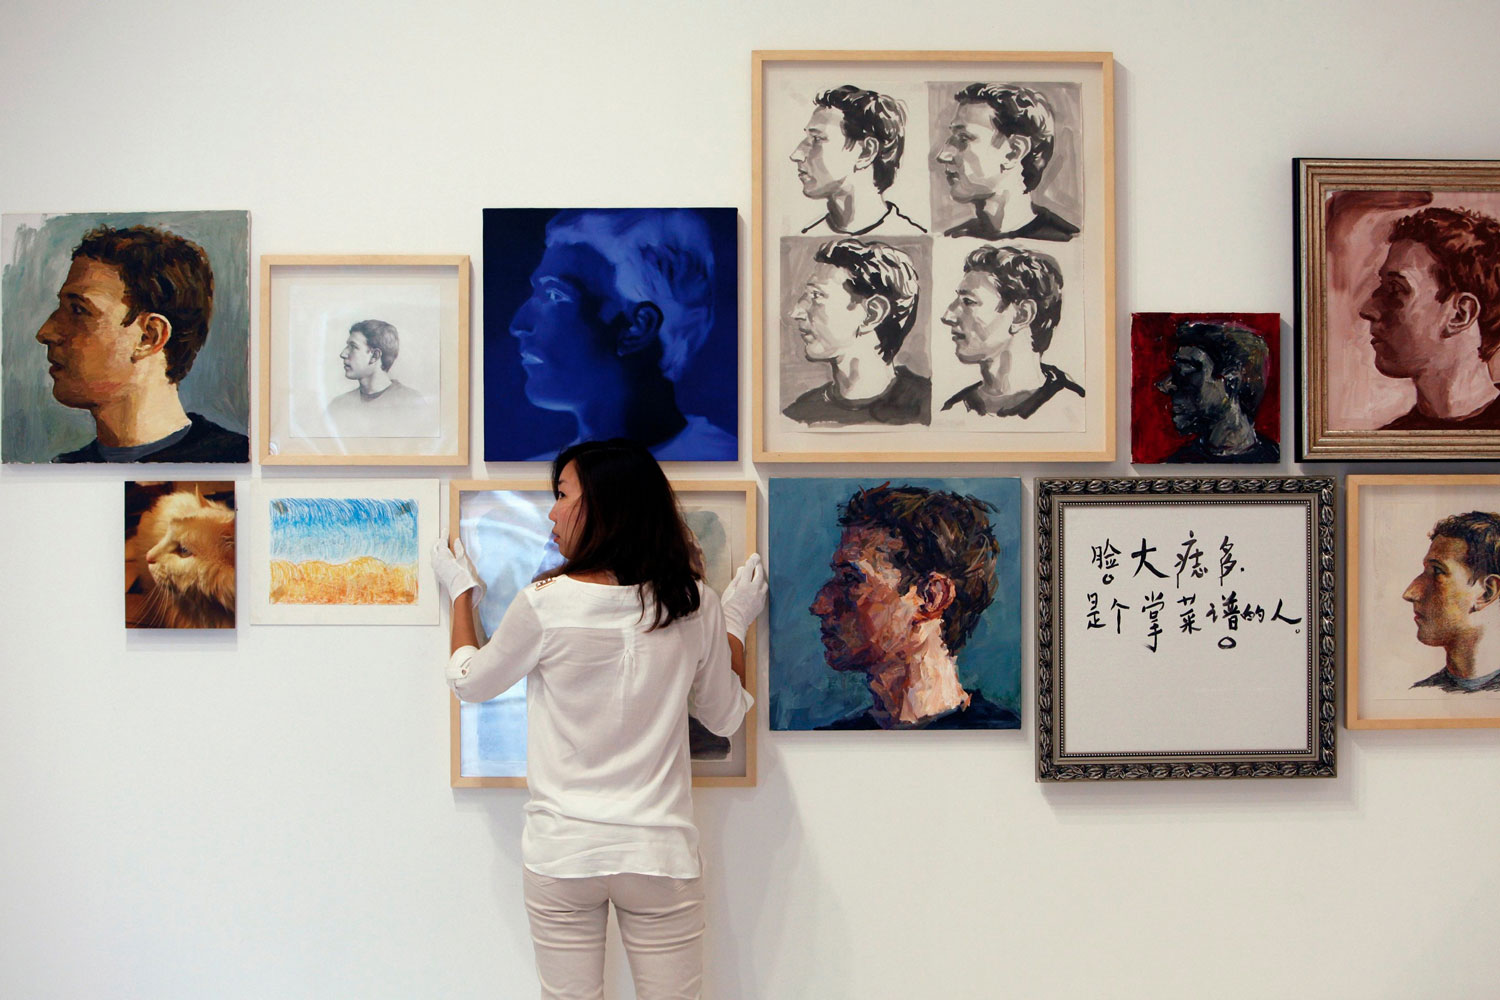 El artista Zhu Jia presenta en Singapur ‘El rostro de Facebook’, 67 recreaciones de Mark Zuckerberg